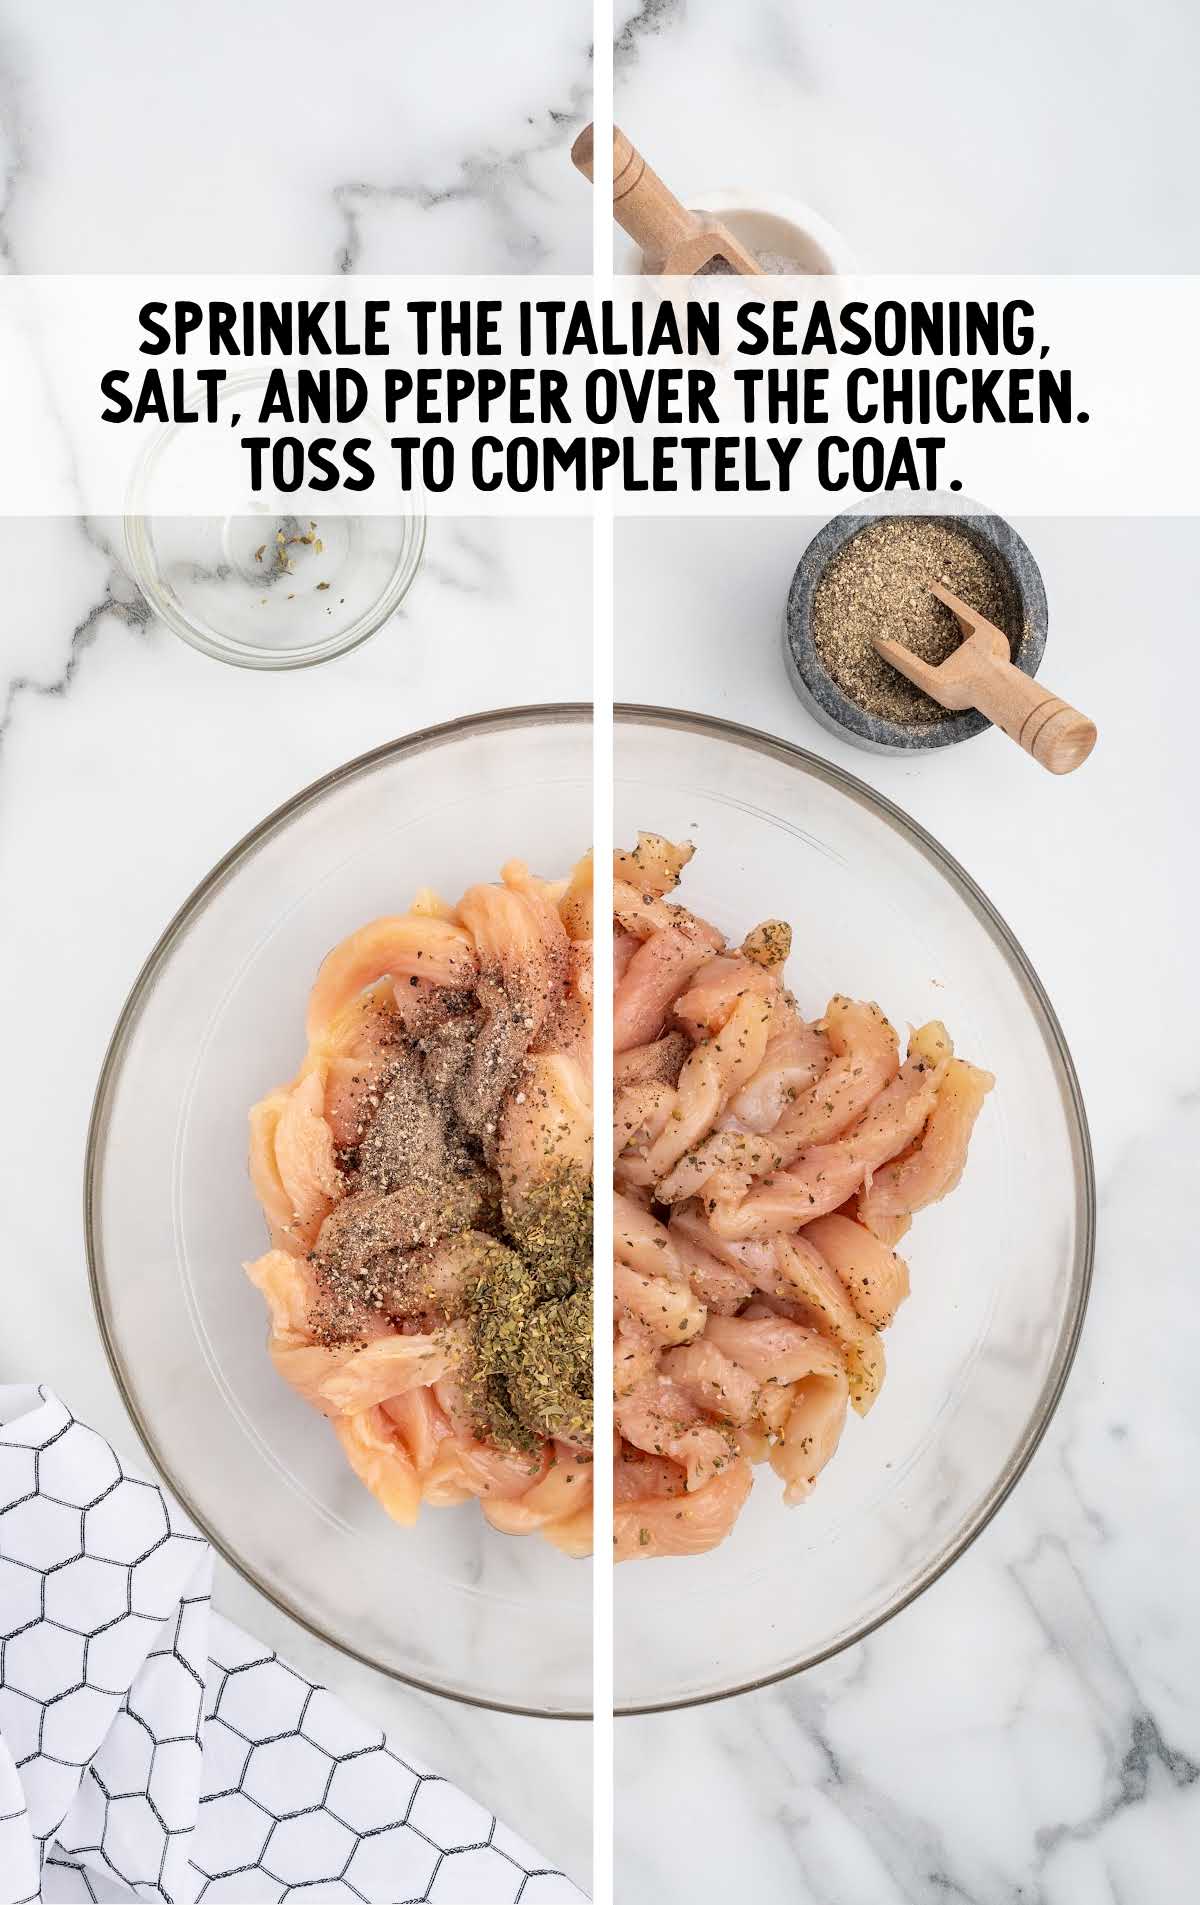 italian seasoning, salt, and pepper sprinkled over the chicken